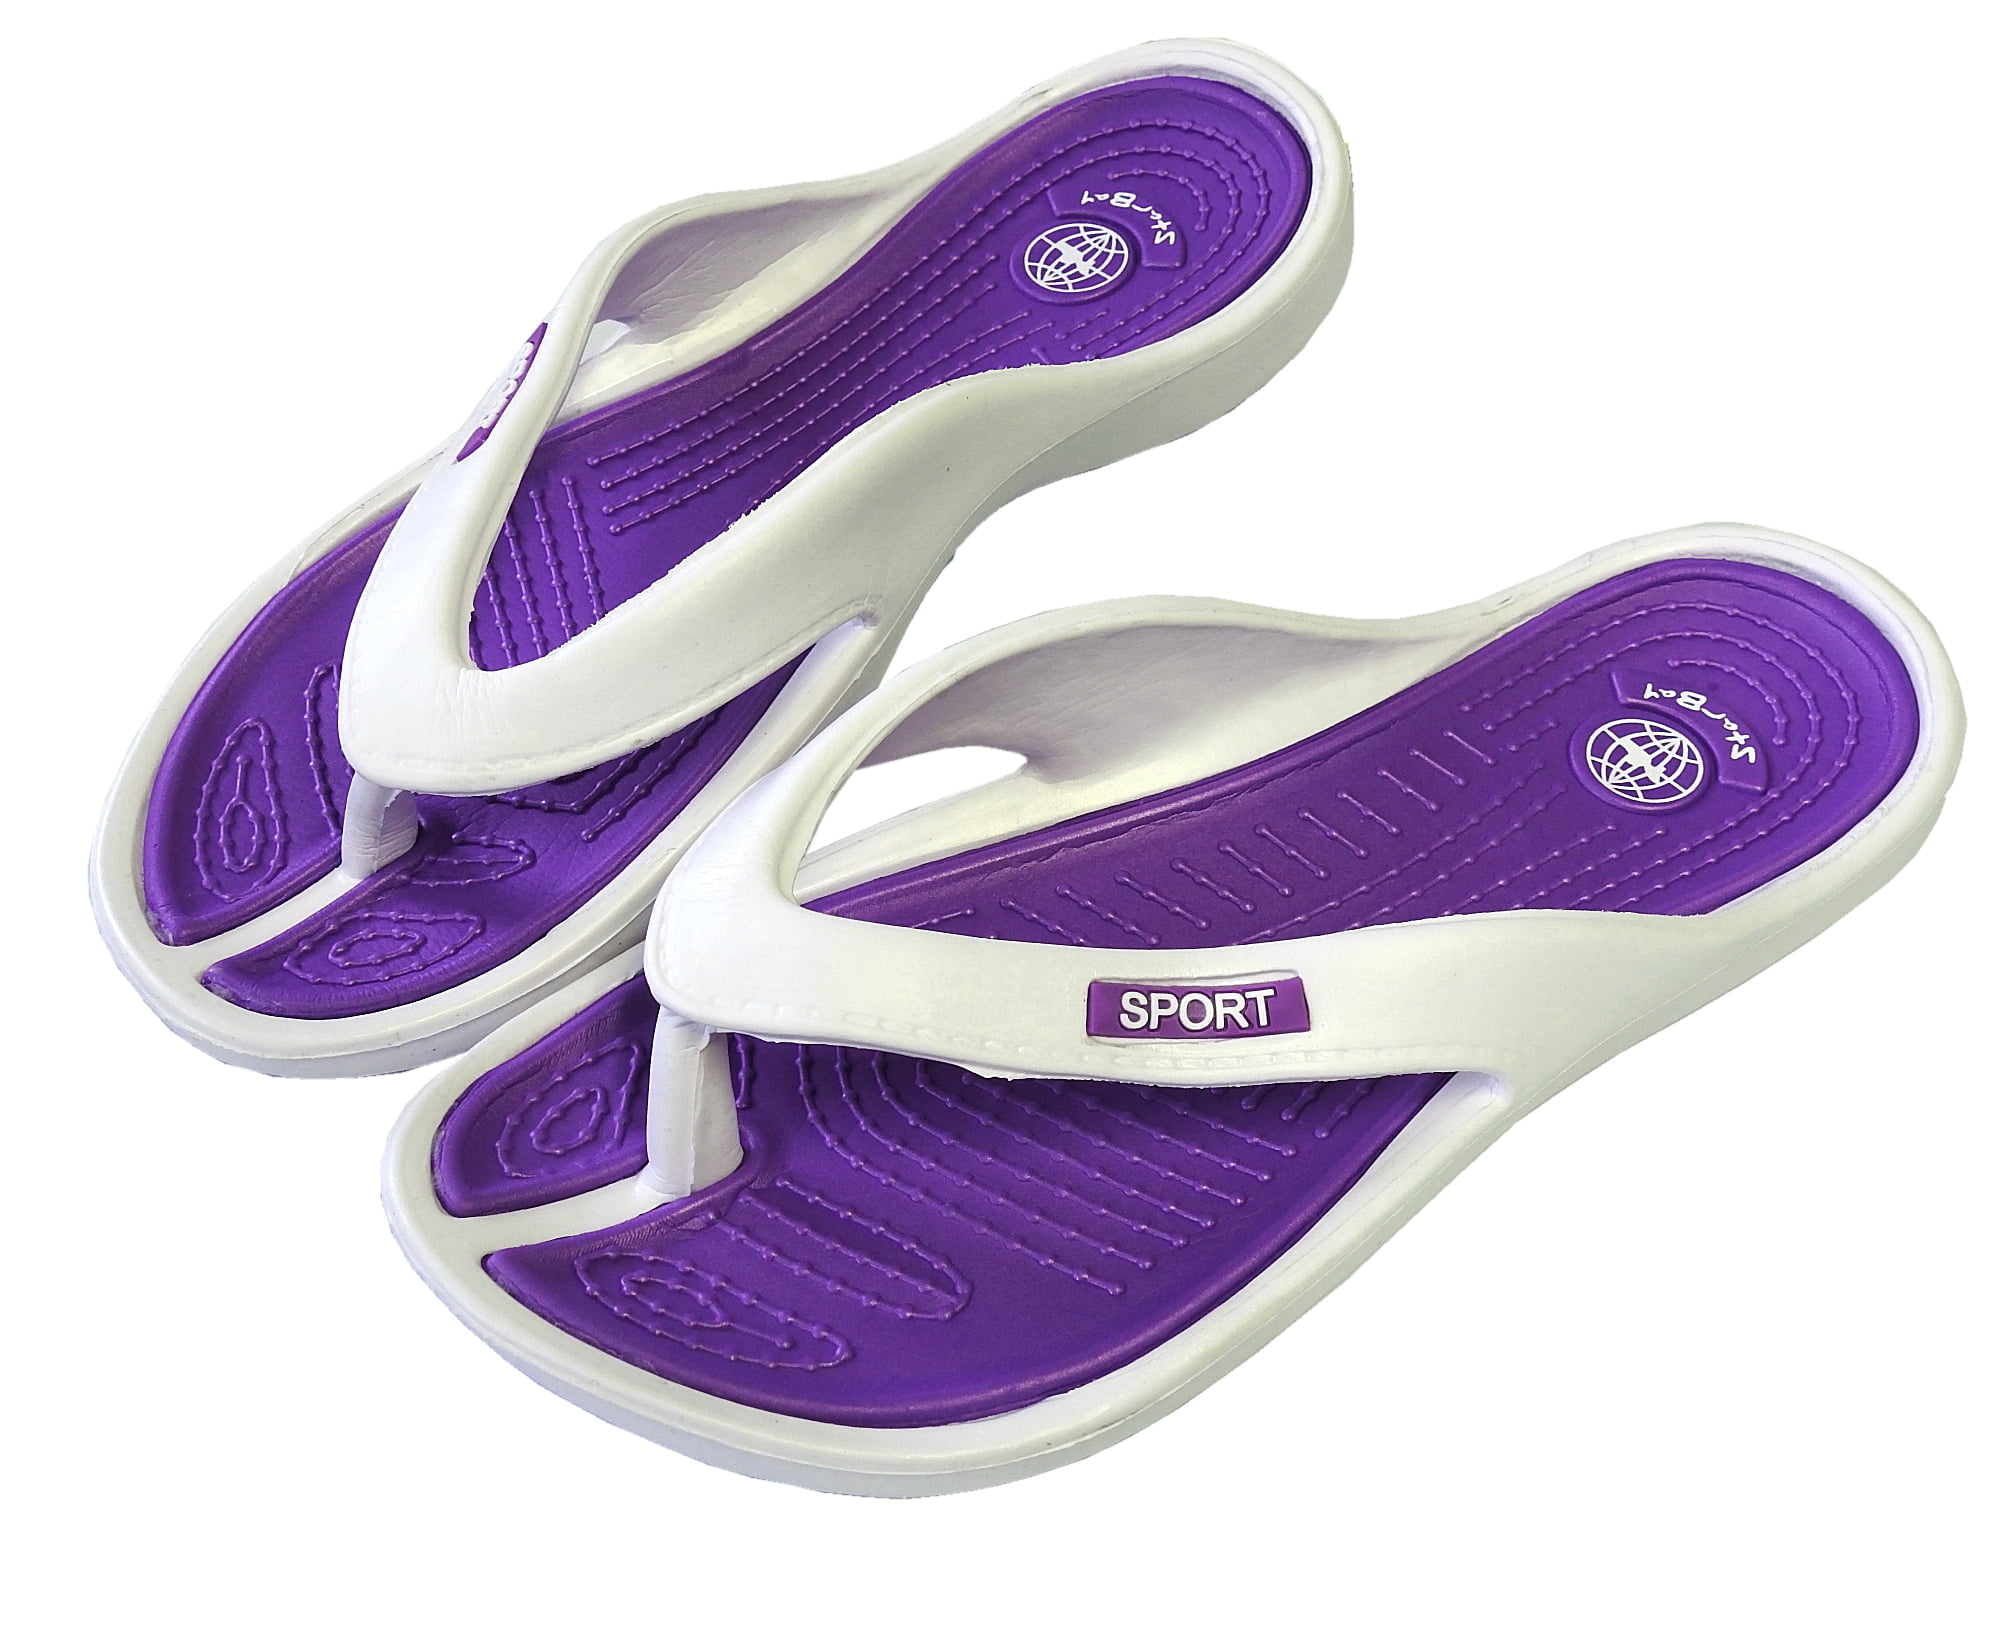 StarBay Women's Casual Slipper Comfortable Shower Beach Shoe Slip on ...